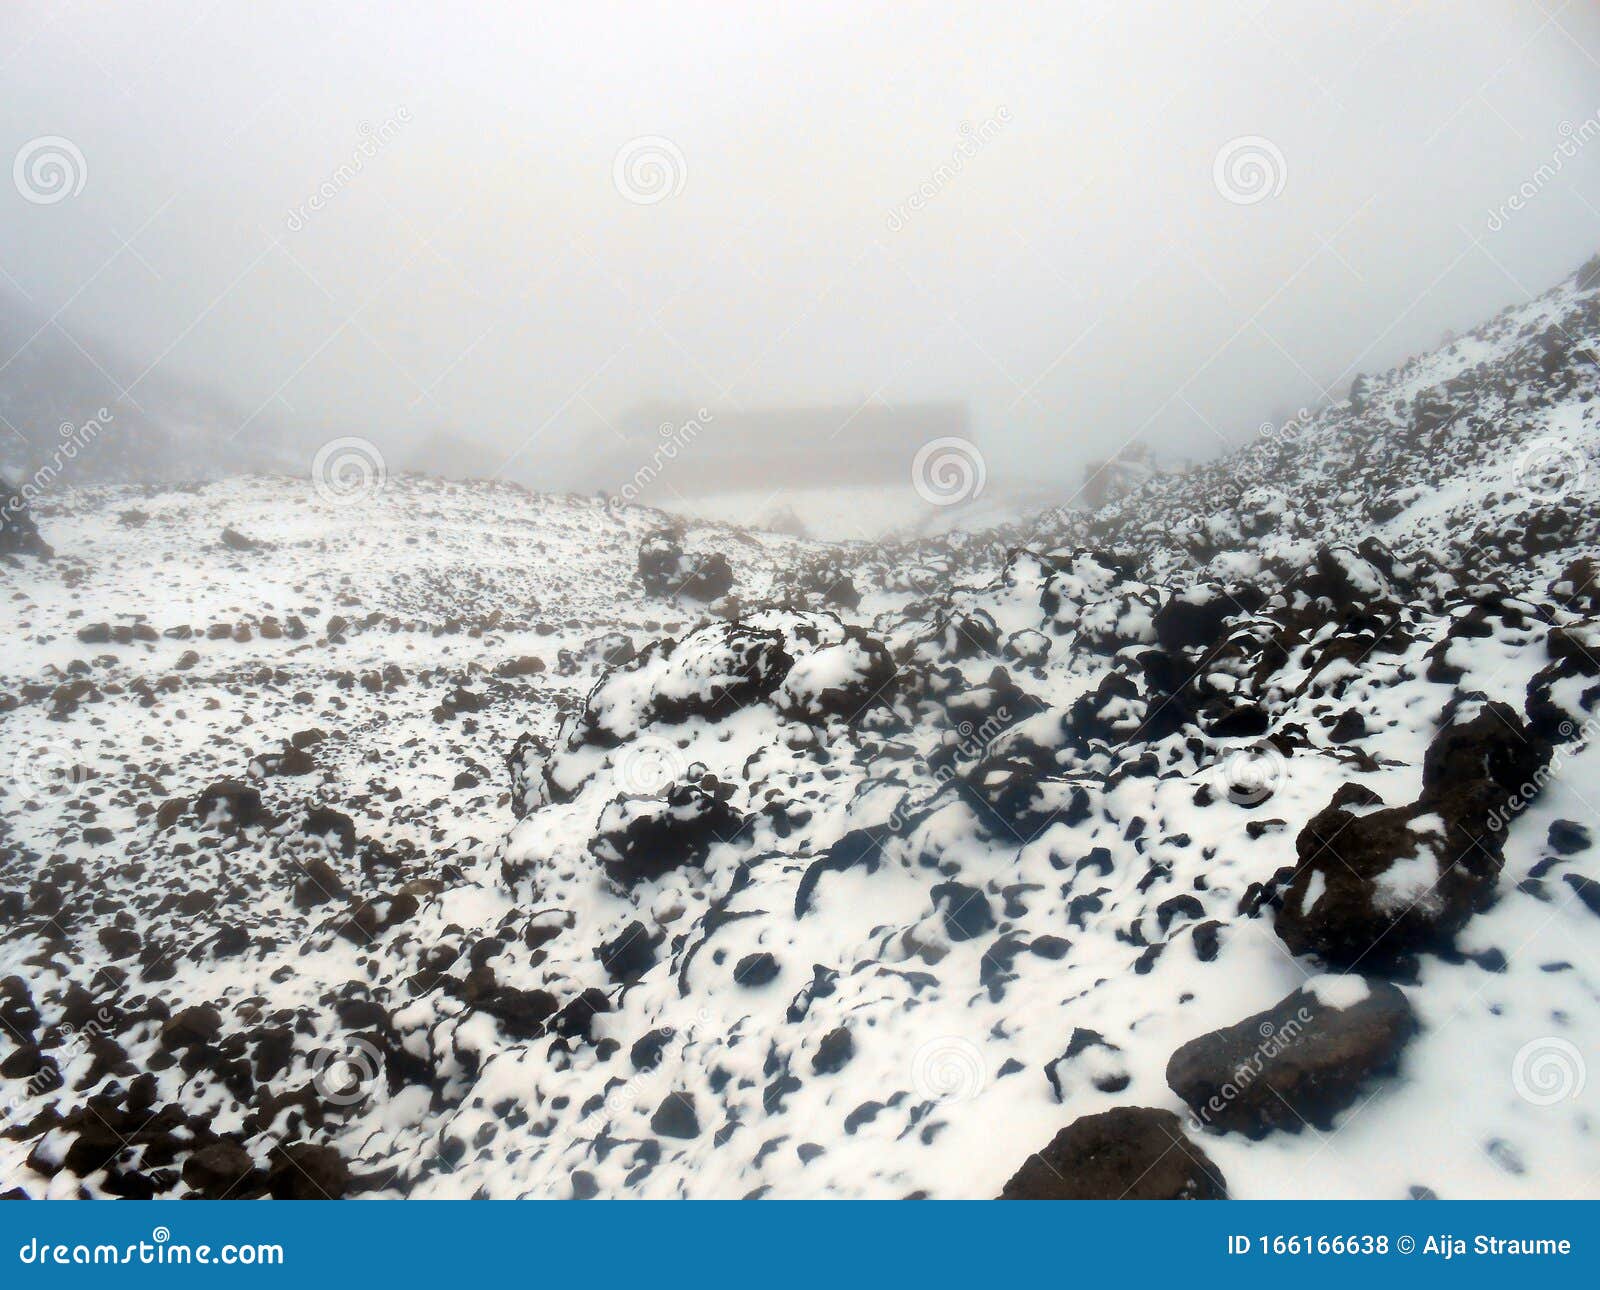 spain tenerife teide national park refuge altavista montana blanca pico del teide